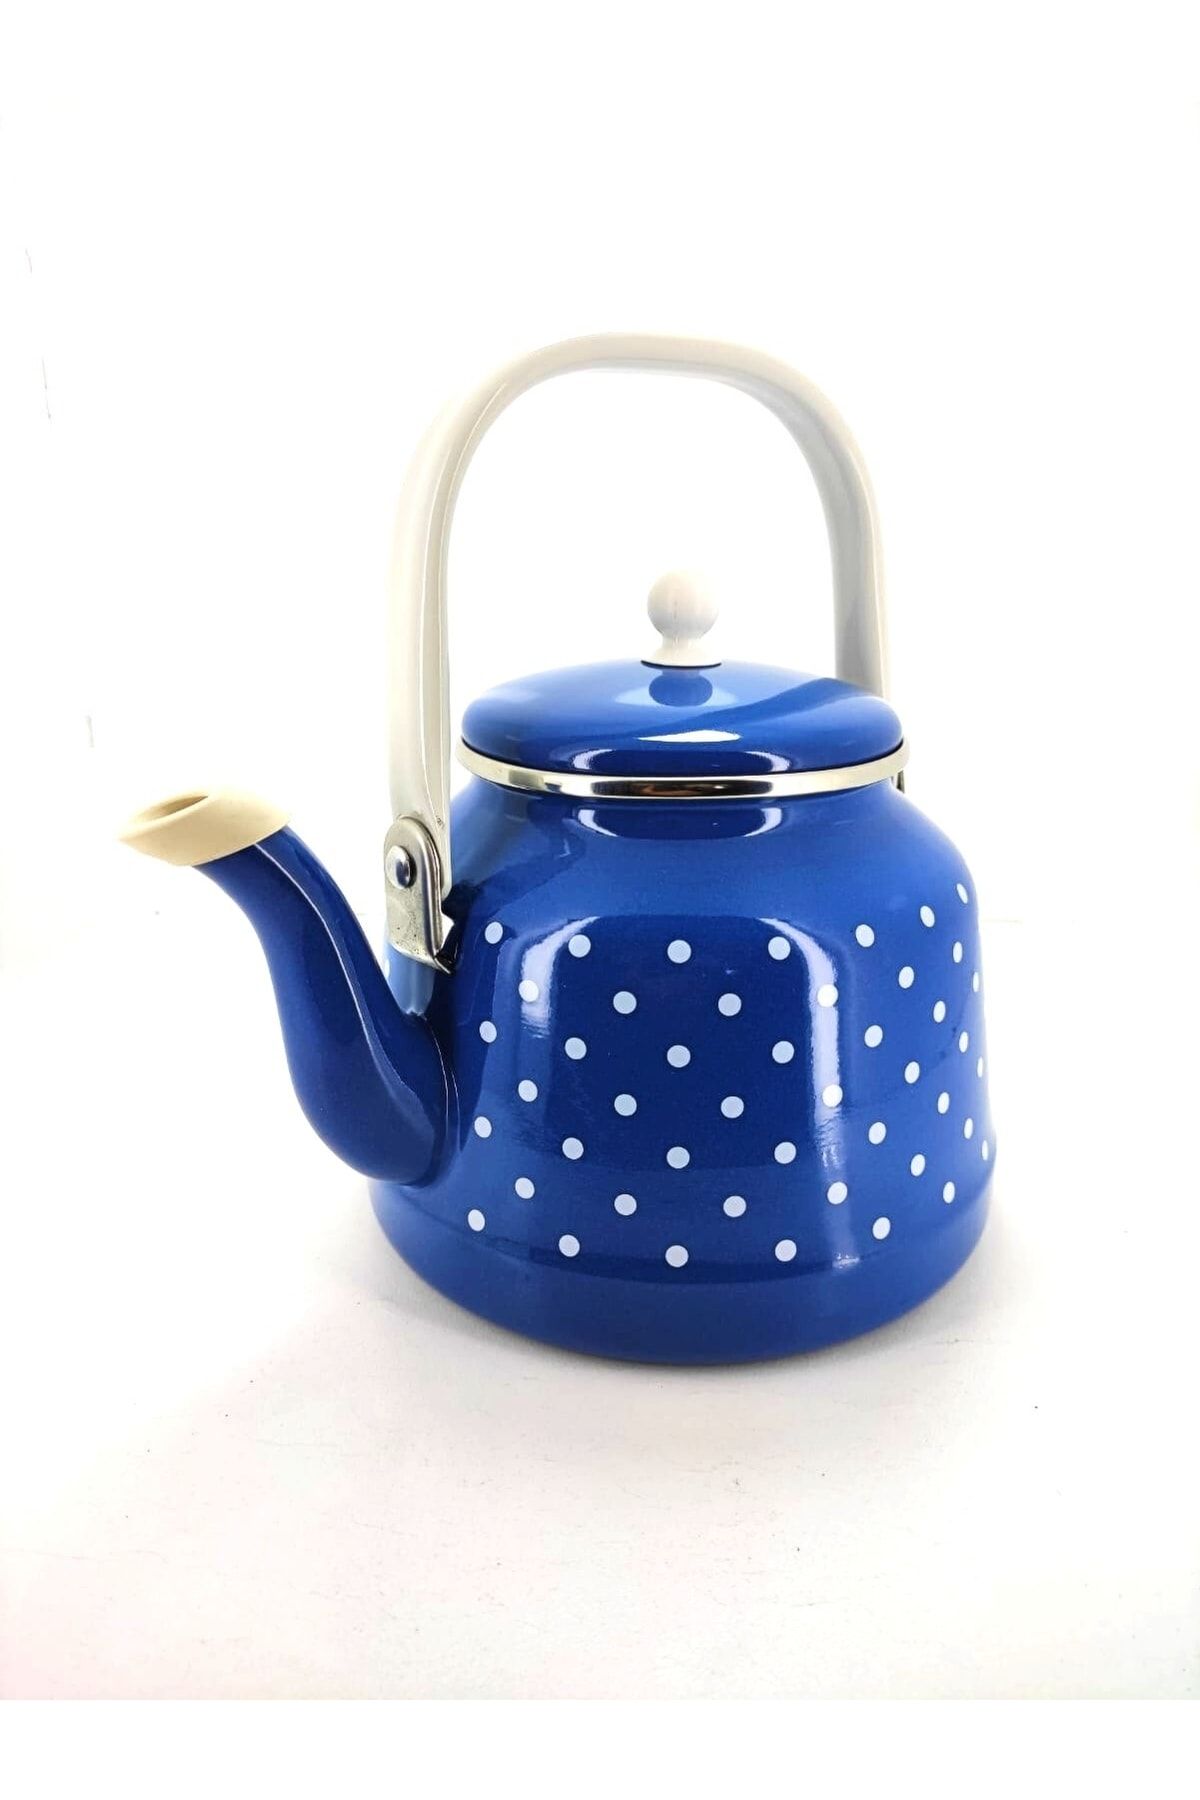 qussine Emaye Çaydanlık 2,5 Litre Çinko Bitki Çayı Demliği Mavi Puantiyeli Çaydanlık